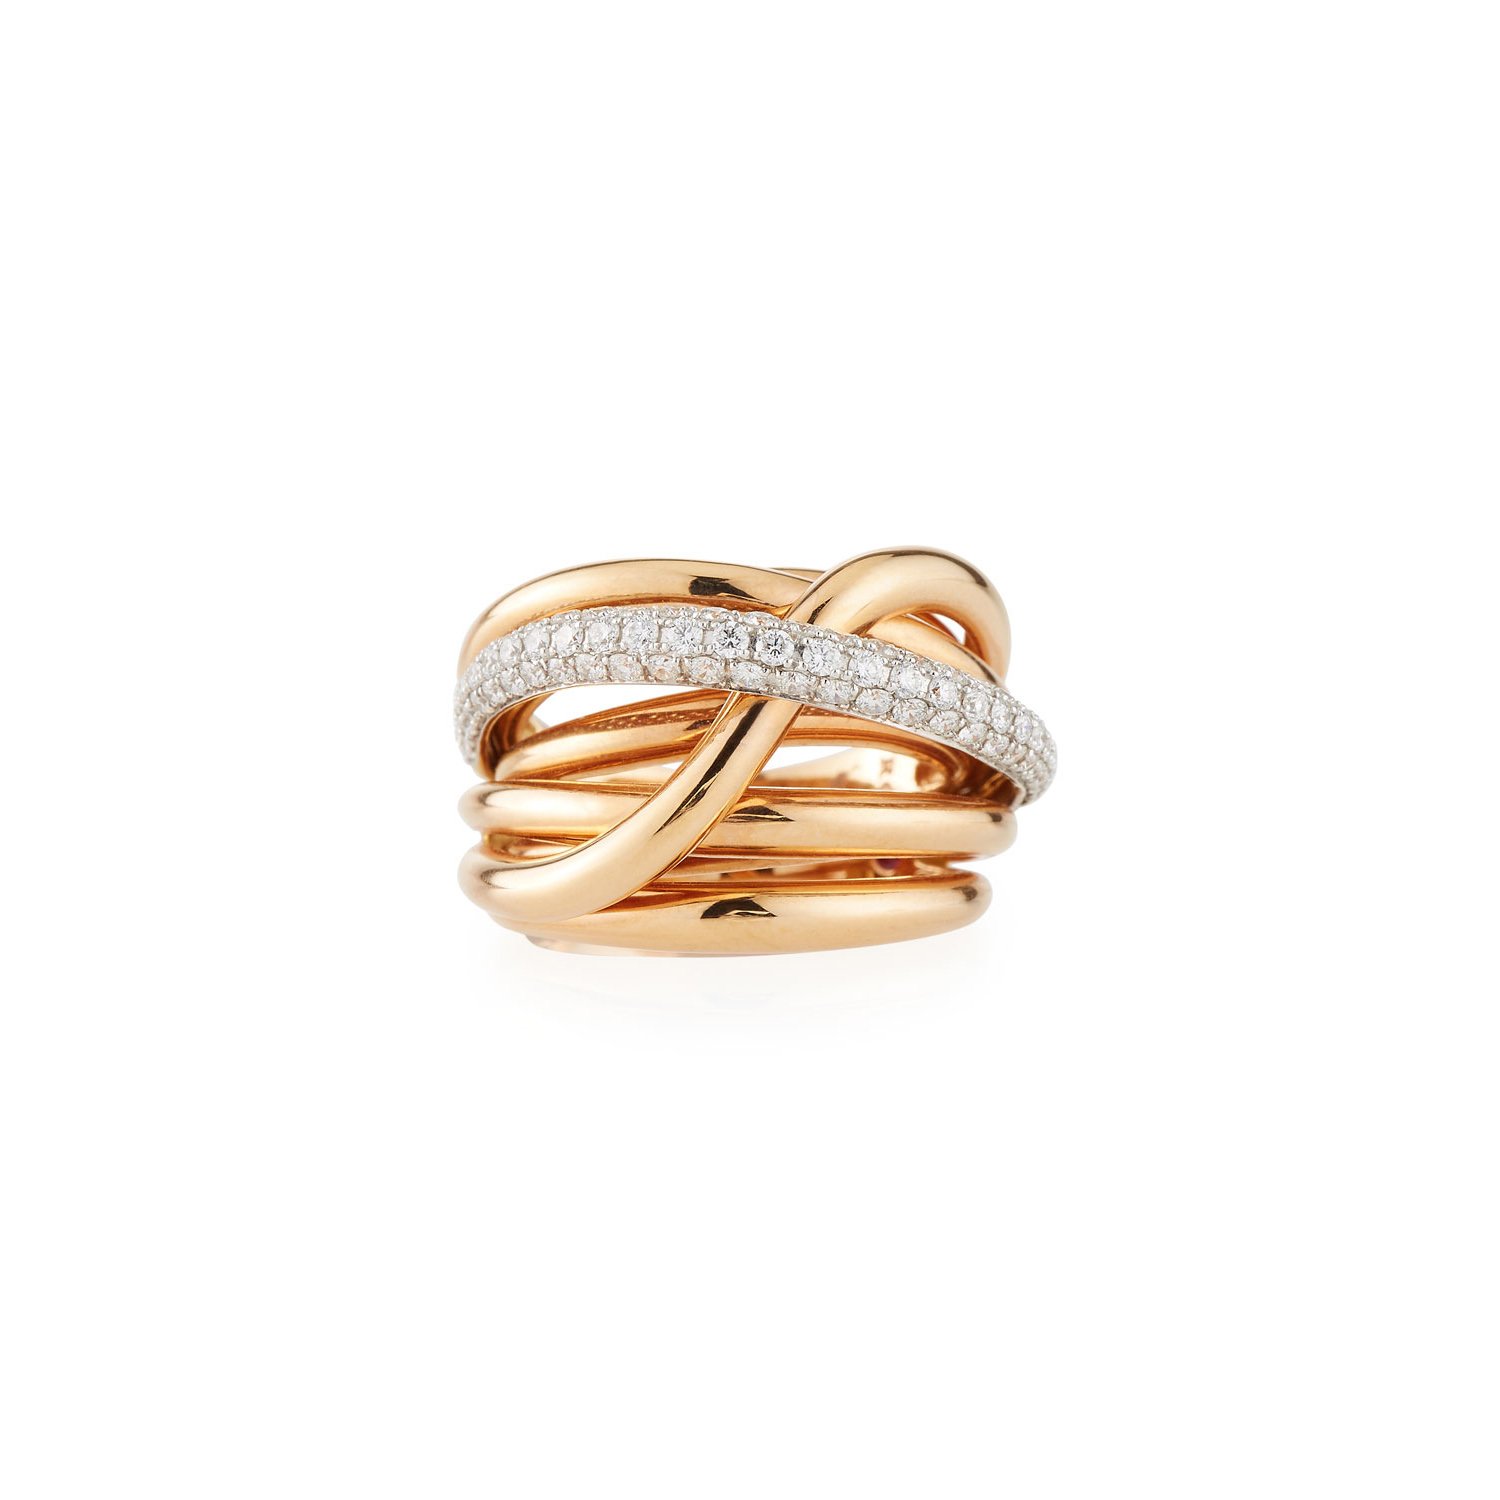 La aduana al por mayor hace al diseñador de la joyería fina de las mujeres del anillo de la superposición del diamante de la joyería del oro rosa 18k OEM/ODM